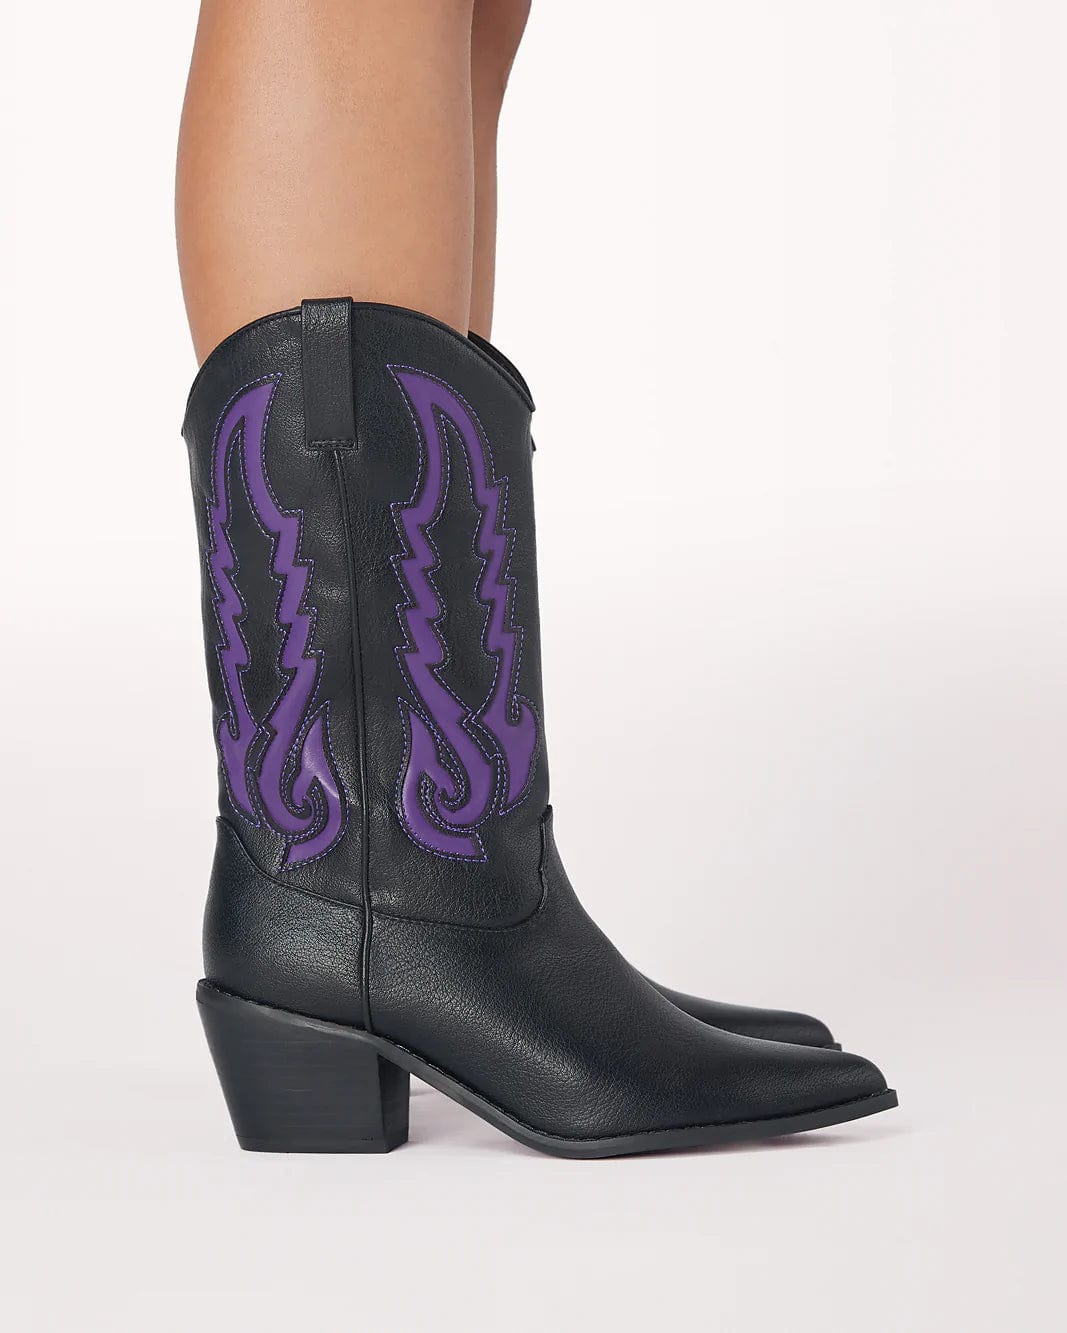 Norva Contrast Cowboy Boots Black/Violet, Shoes by Billini Shoes | LIT Boutique